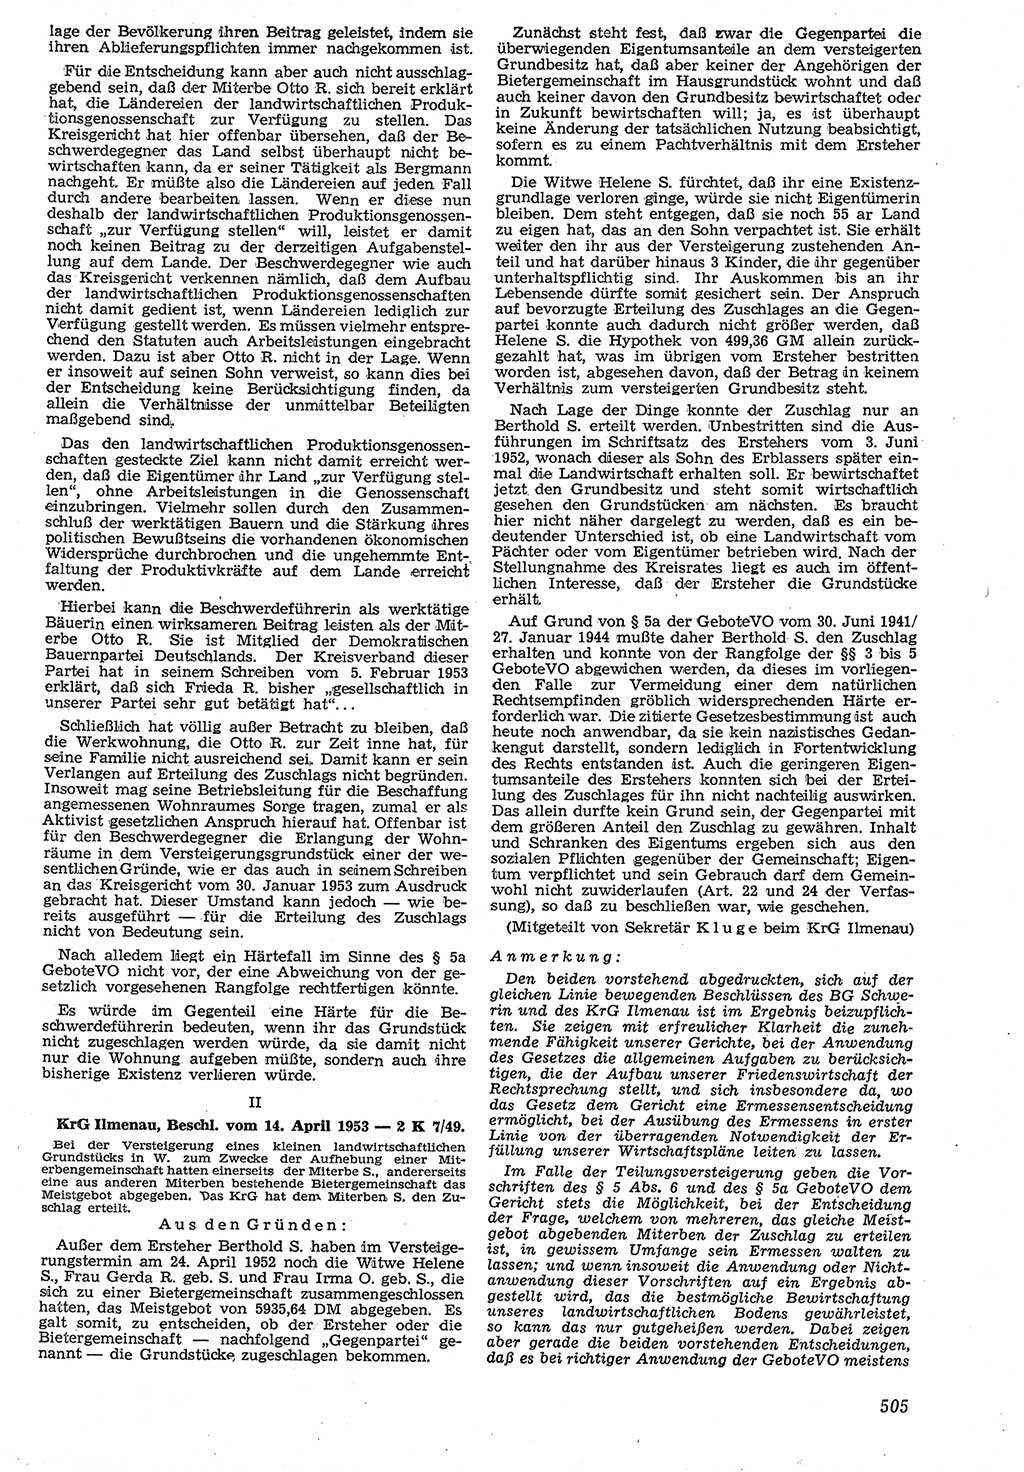 Neue Justiz (NJ), Zeitschrift für Recht und Rechtswissenschaft [Deutsche Demokratische Republik (DDR)], 7. Jahrgang 1953, Seite 505 (NJ DDR 1953, S. 505)